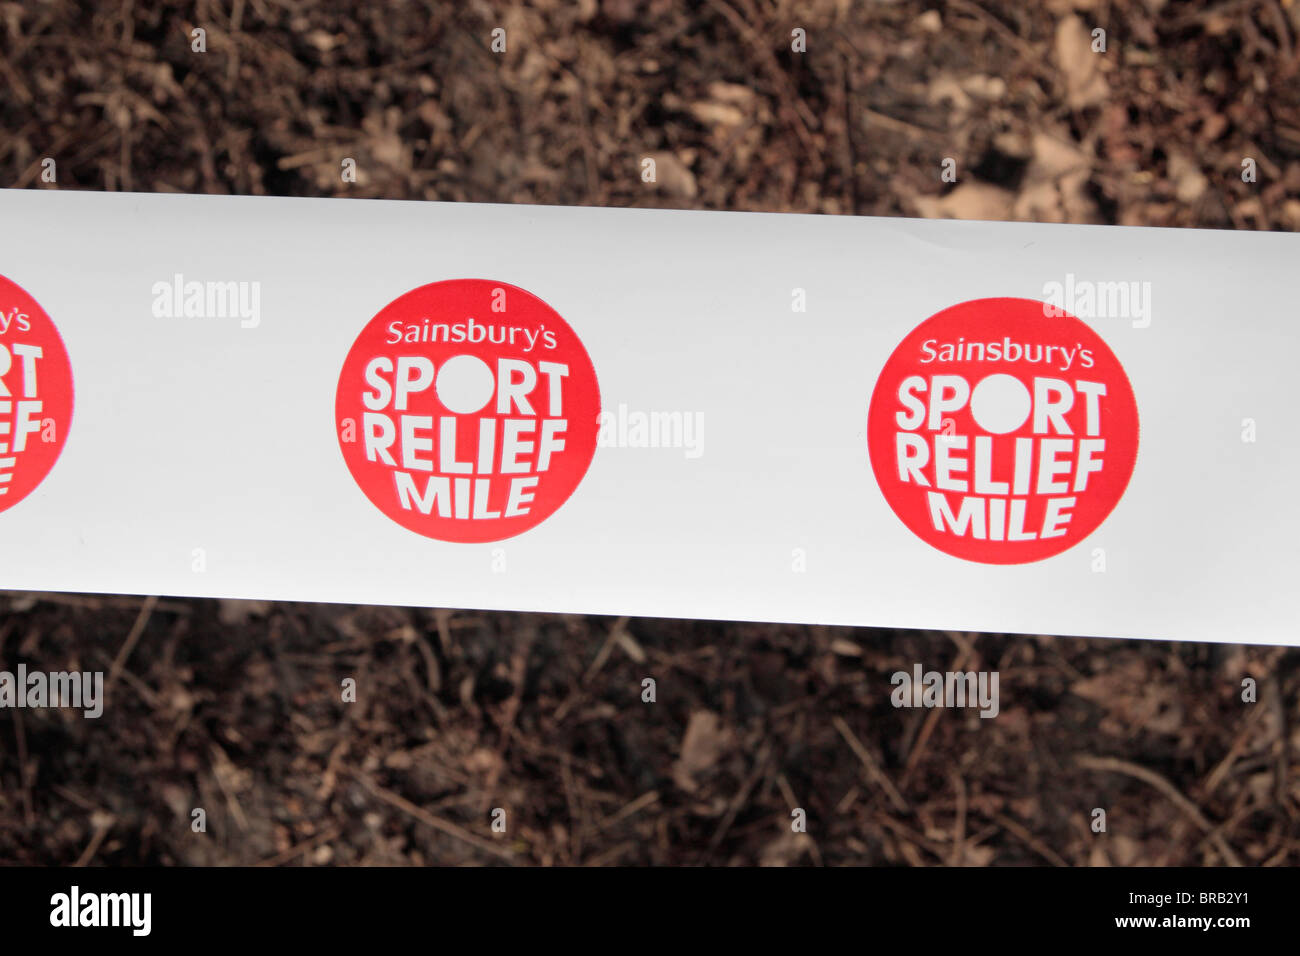 La Sainsbury's Sports logo in rilievo sul nastro in corrispondenza di una carità miglia race a Londra, Regno Unito. Foto Stock